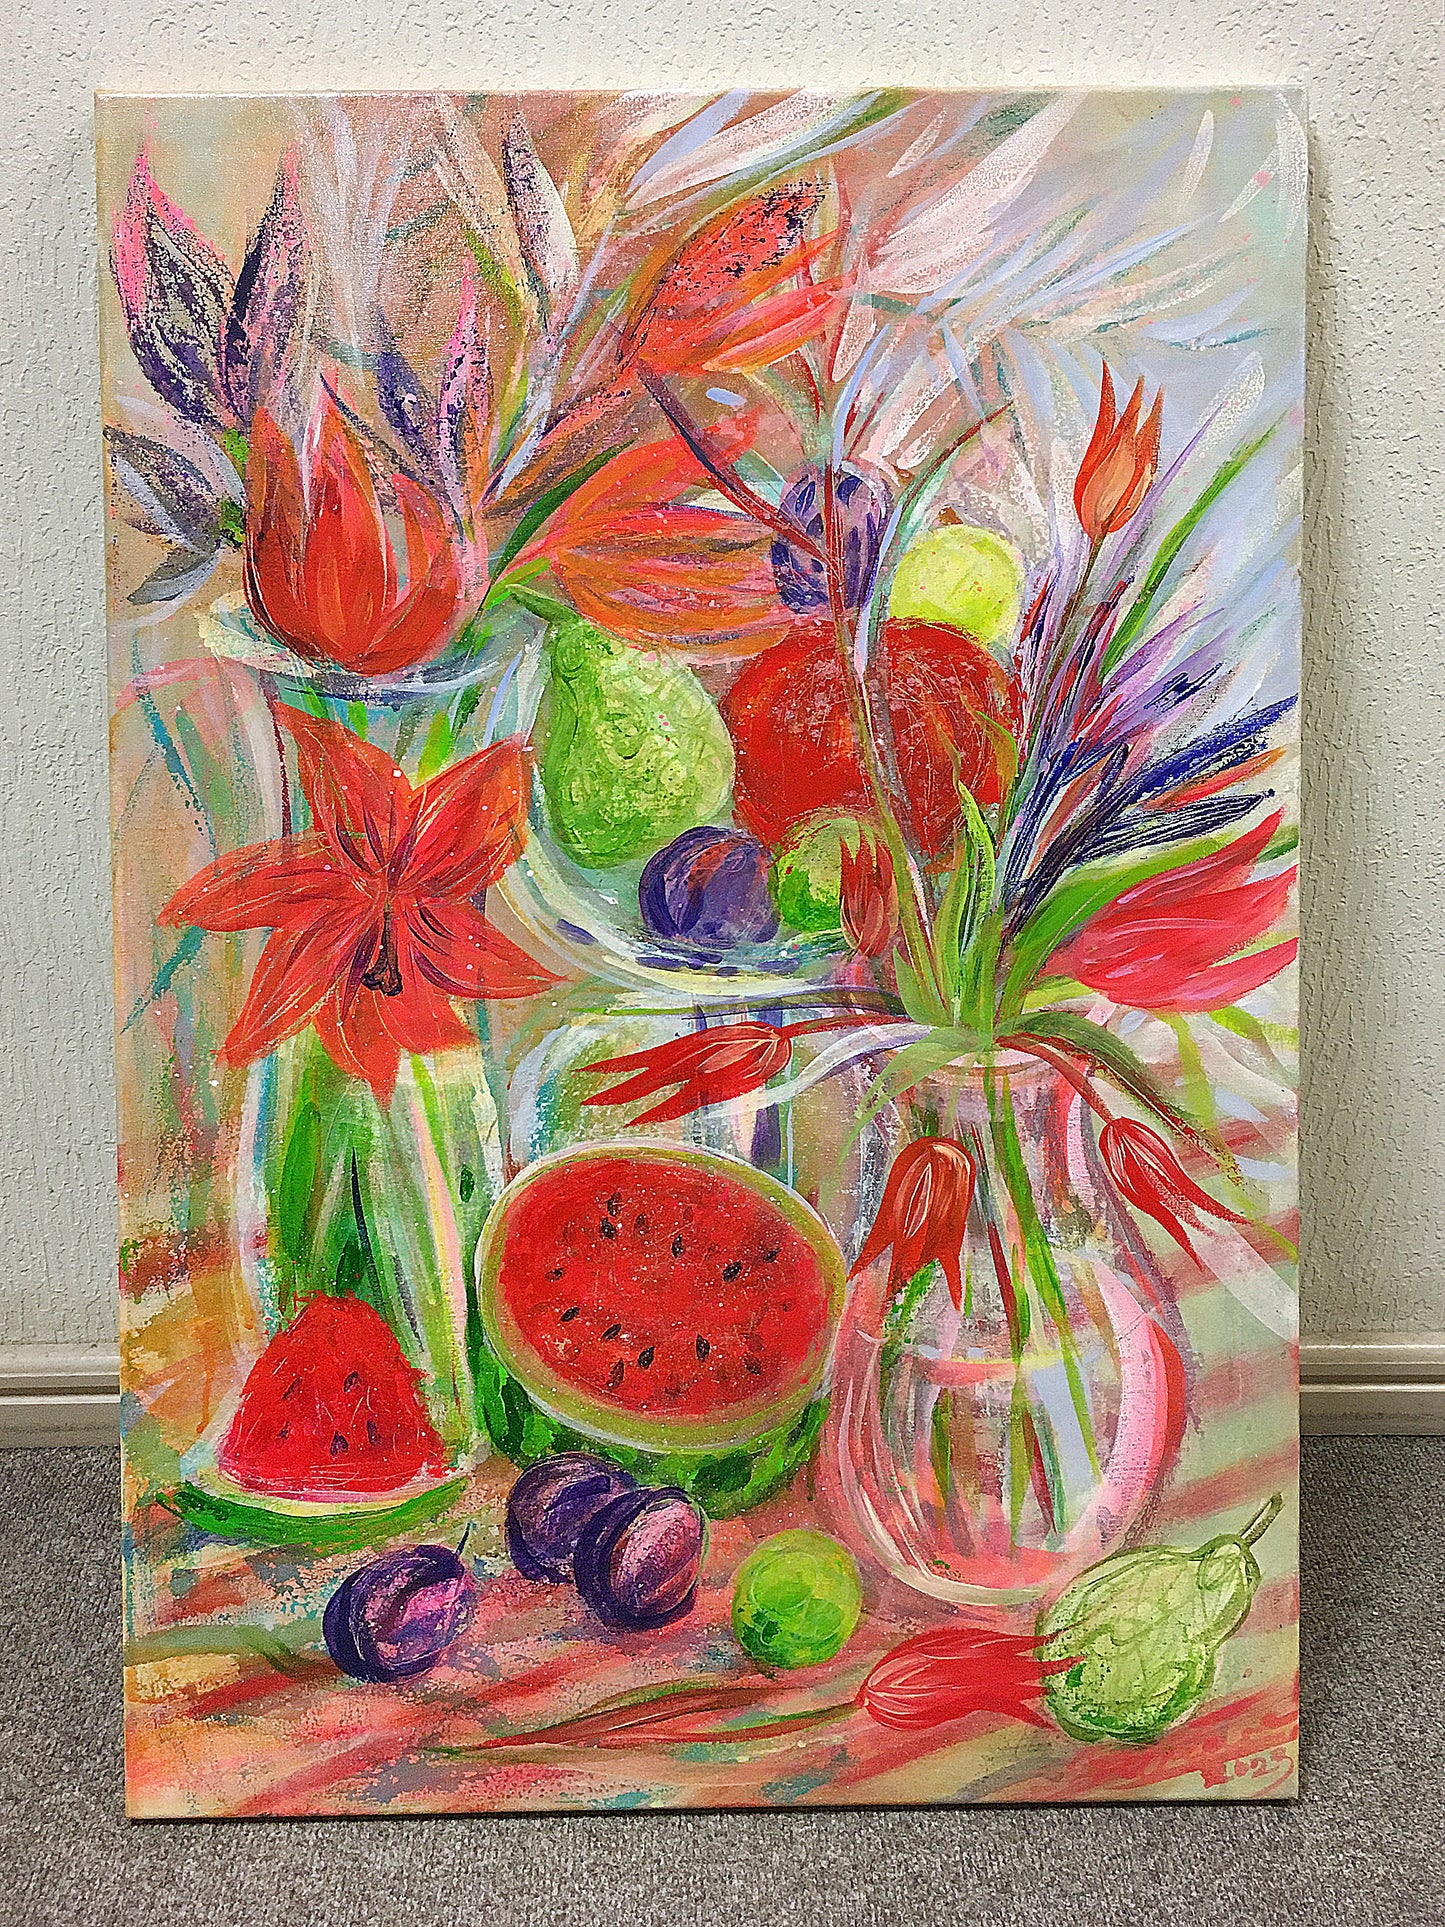 Stil life with watermelon / 90x60cm / Acrylic, canvas